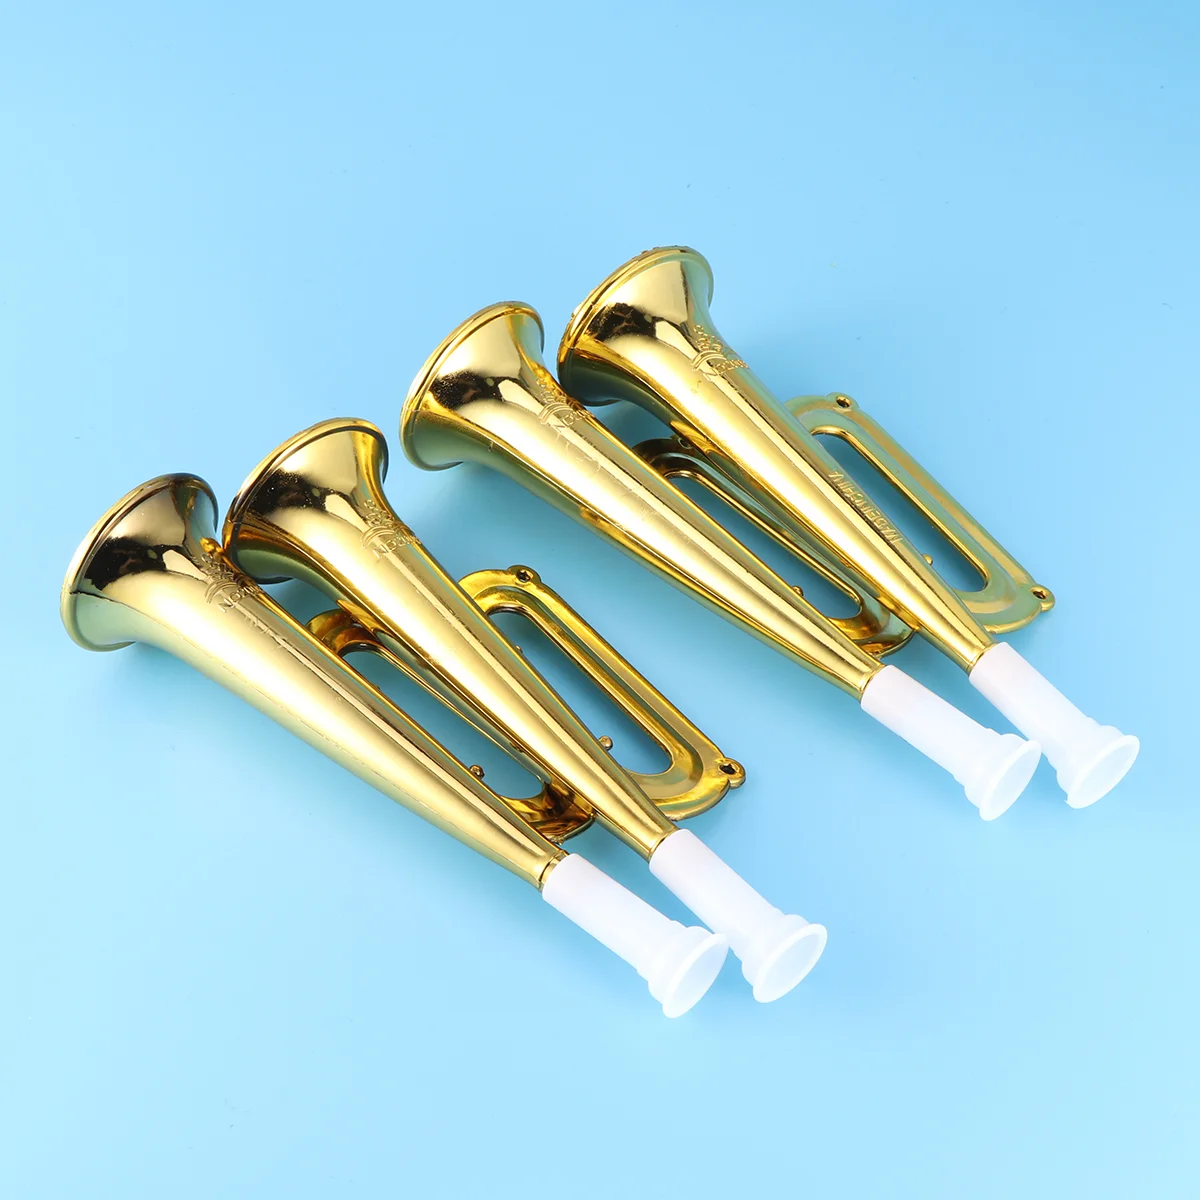 

Труба-инструмент Детские технические инструменты ветряные игрушки металлические развивающие ранние флейты музыкальная модель на день рож...